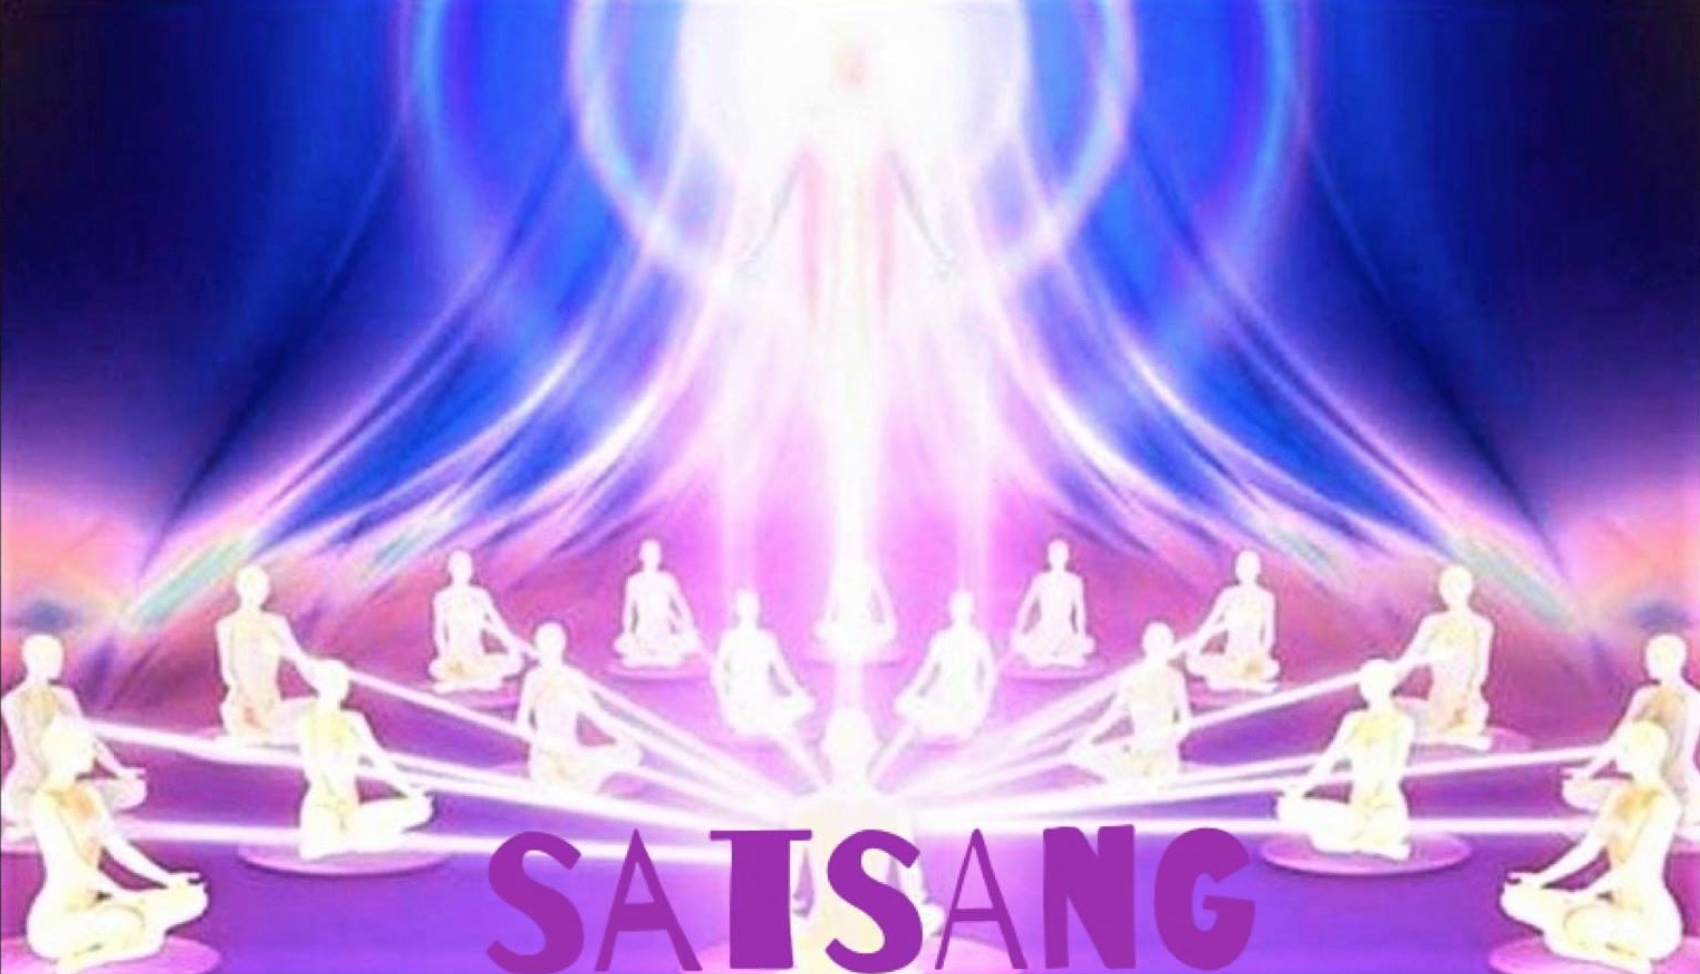 Satsang Group Meeting